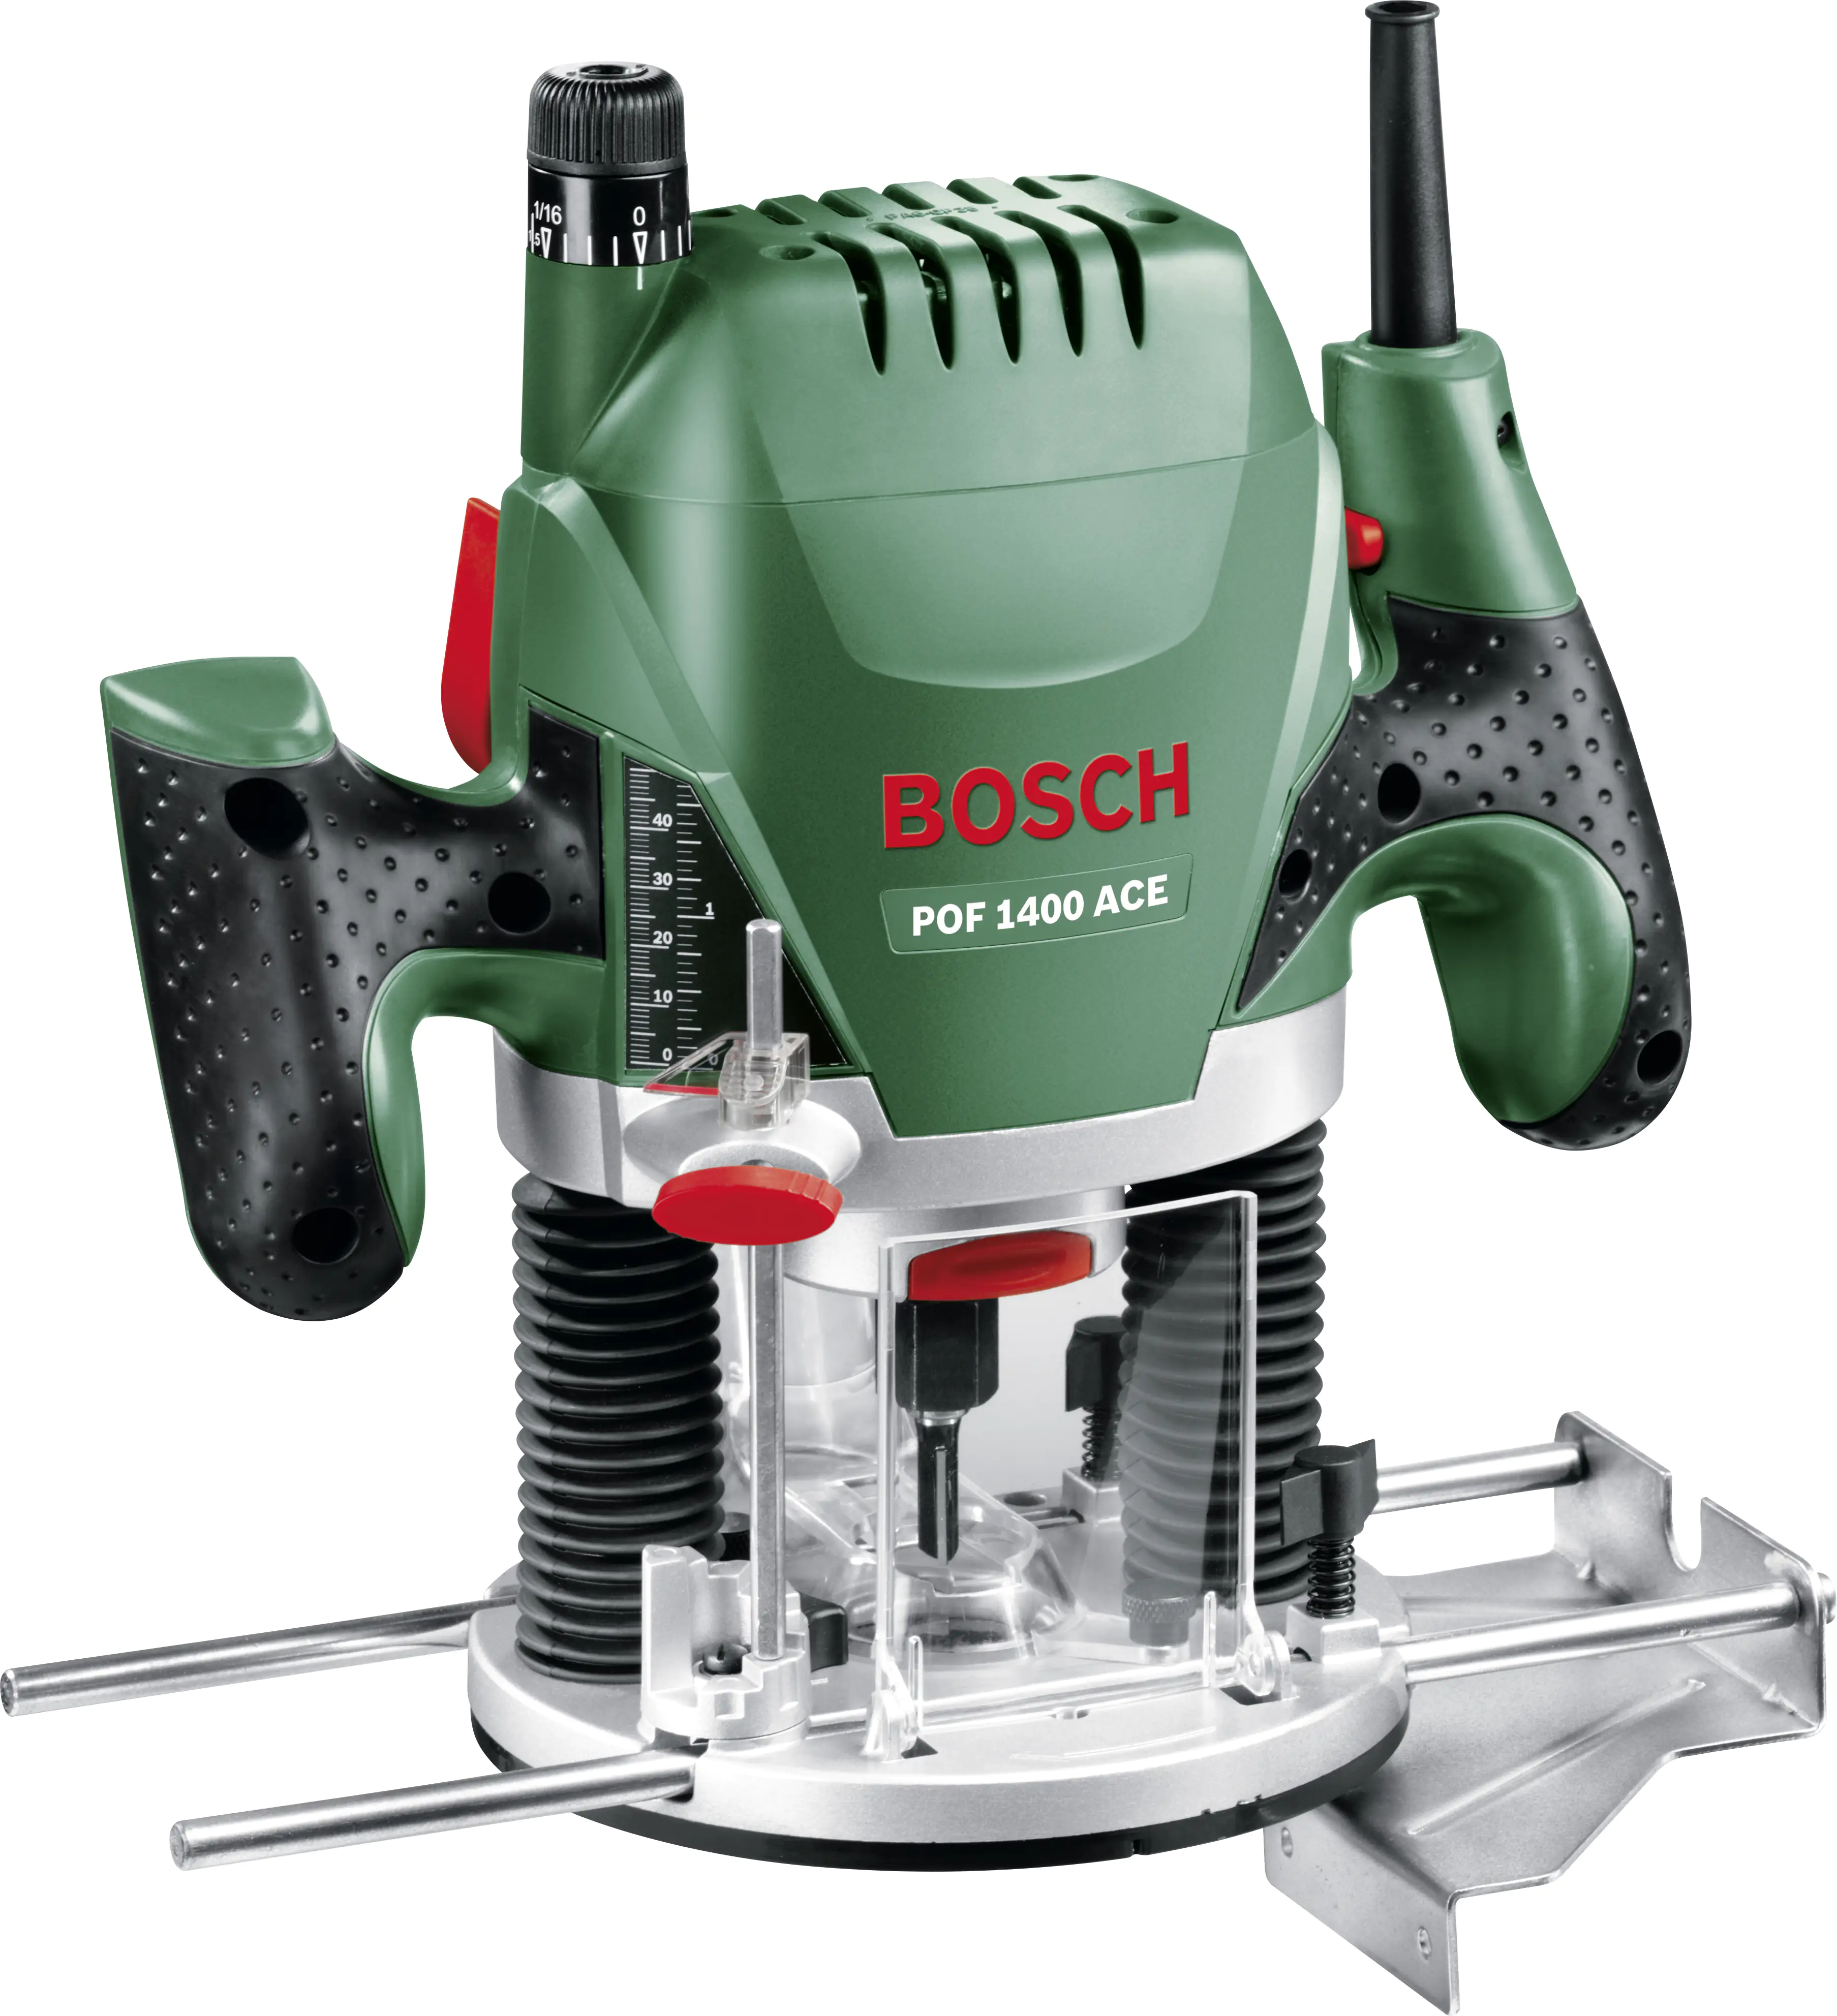 Bosch купить нижний новгород. Вертикальный фрезер Bosch POF 1400 Ace 060326c820, 1400 Вт. Фрезер Bosch pof1200 AE. Bosch POF 1200 AE 060326a100. Фрезер Bosch POF 1400 Ace + 6 фрез.